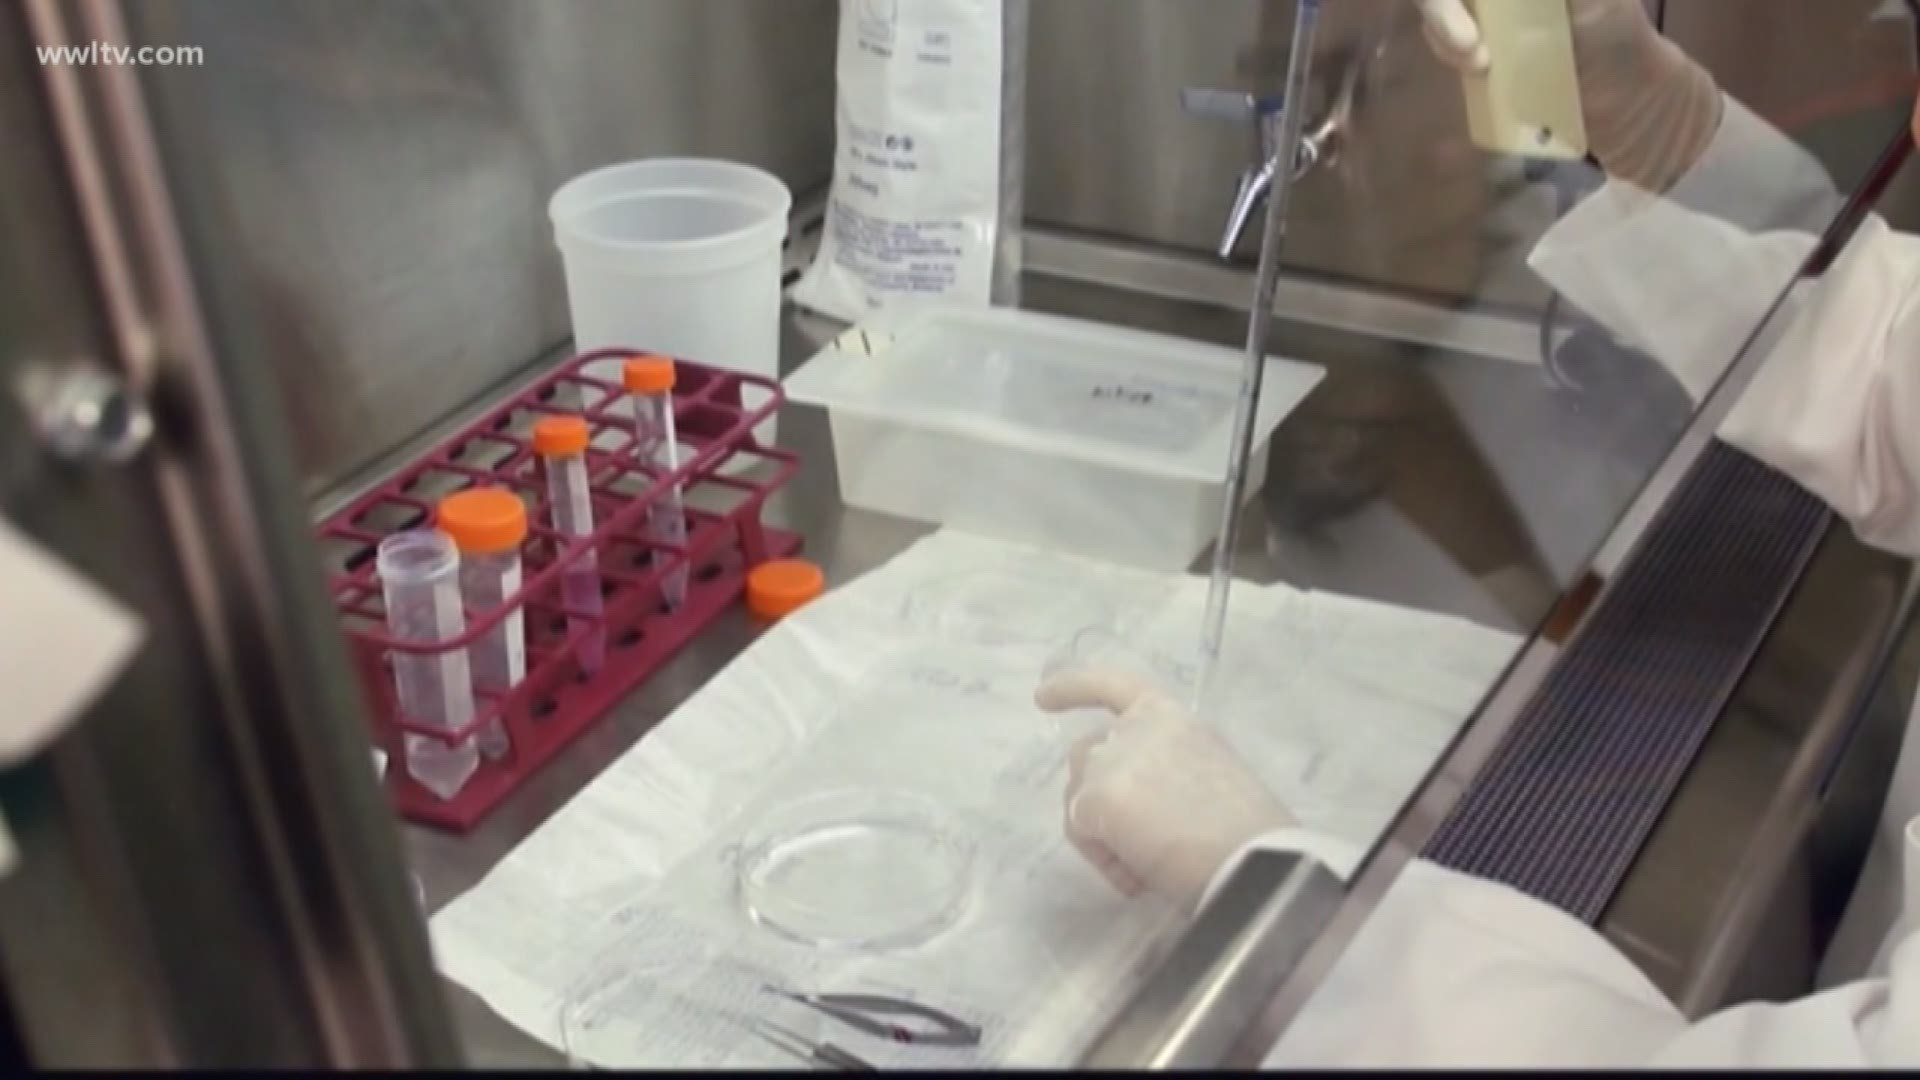 Louisiana unveils Hepatitis C program designed like Netflix